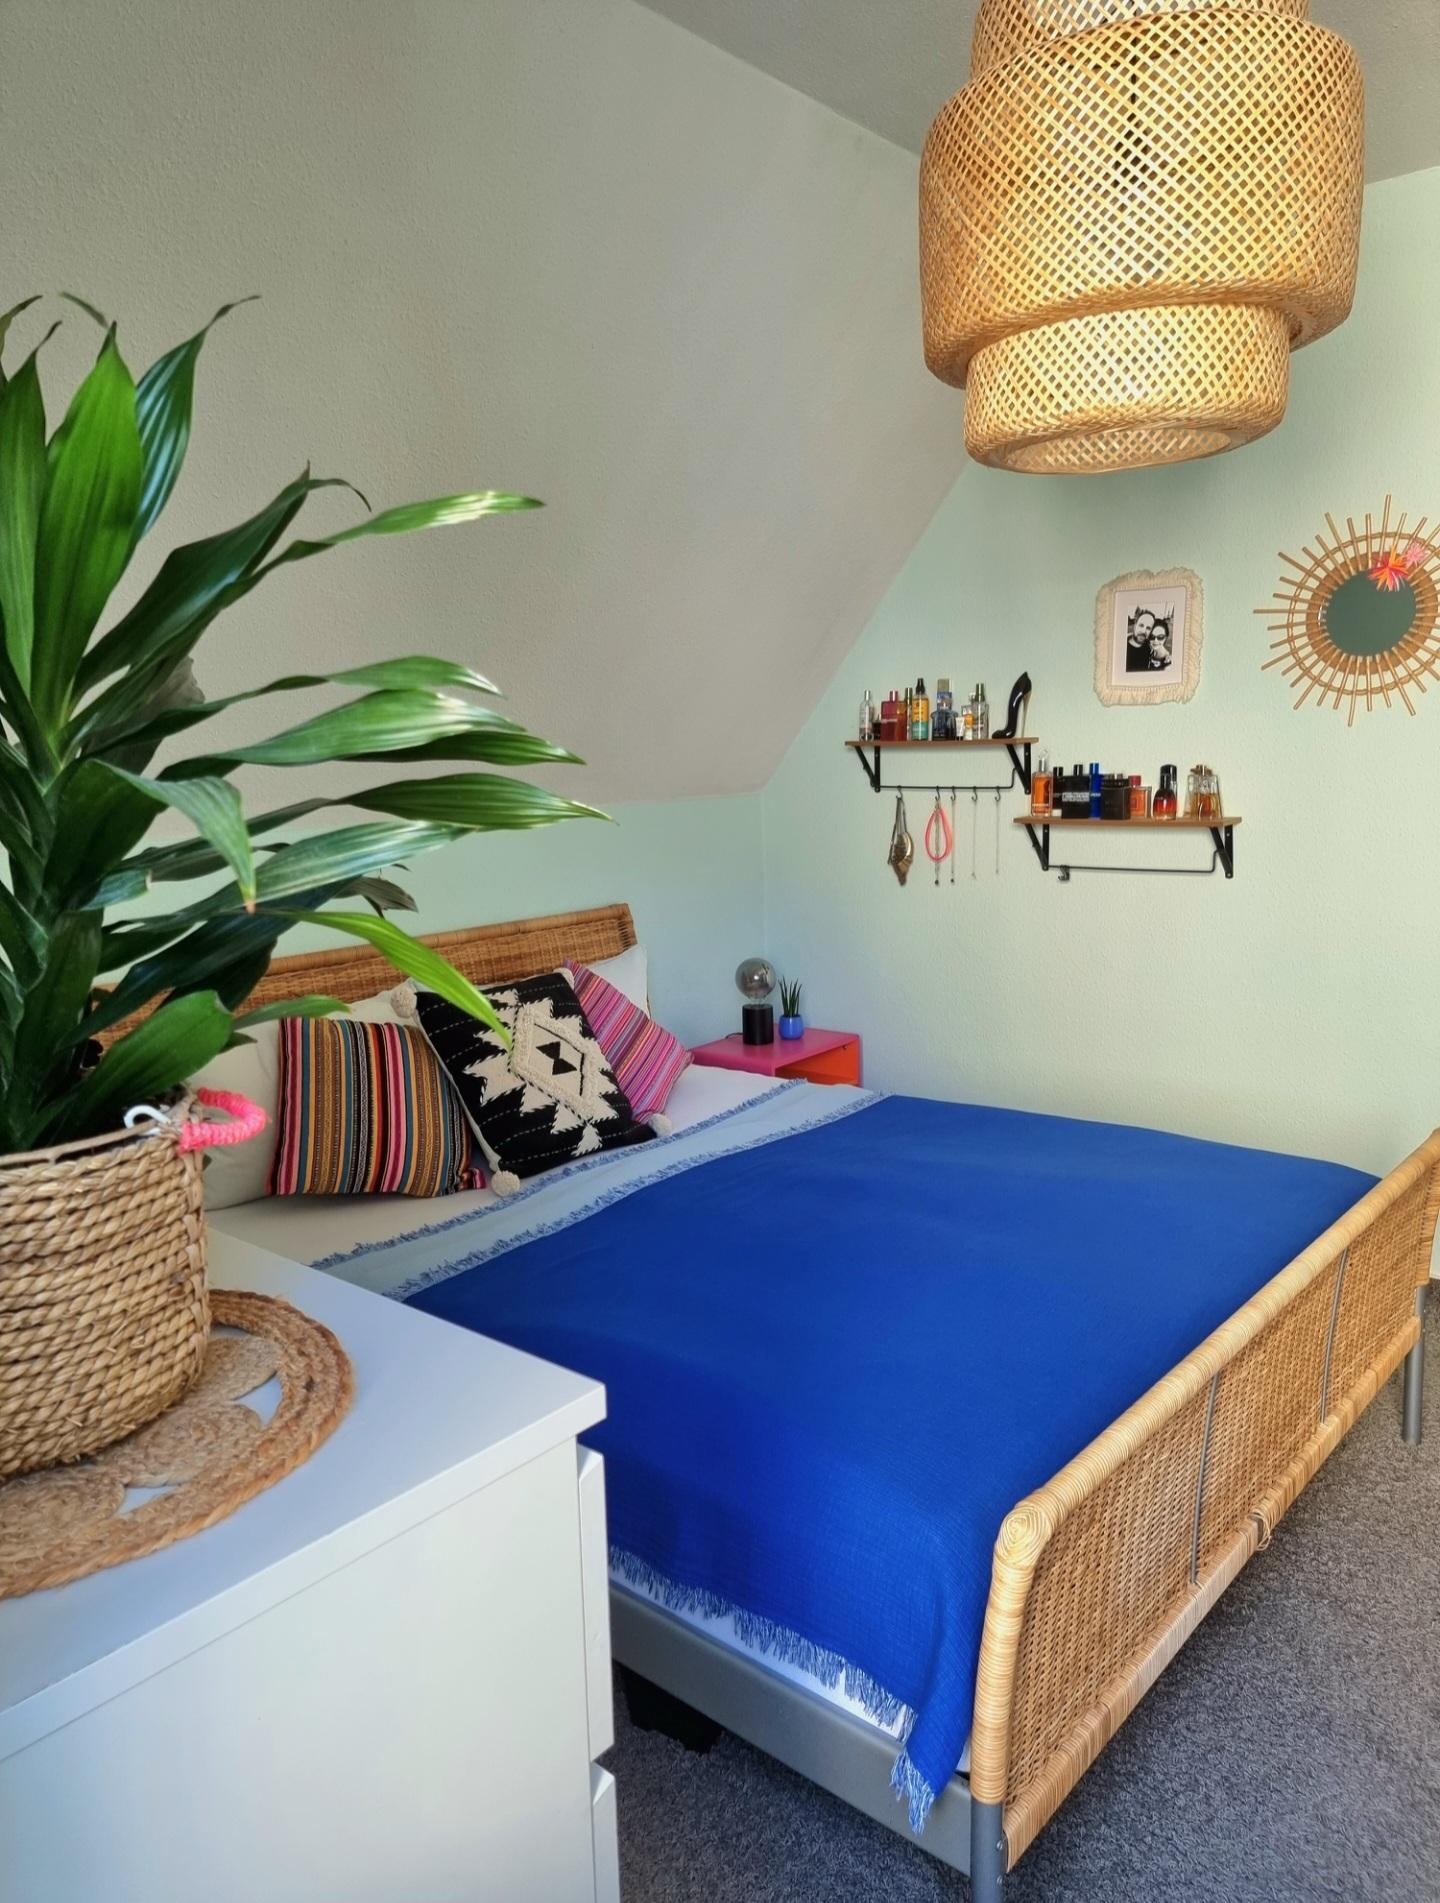 Unser #Schlafzimmer im #Bohostyle passend zu den lauen Sommernächten #Livingchallenge #Greenterior #Urlaub #Sommer #Love